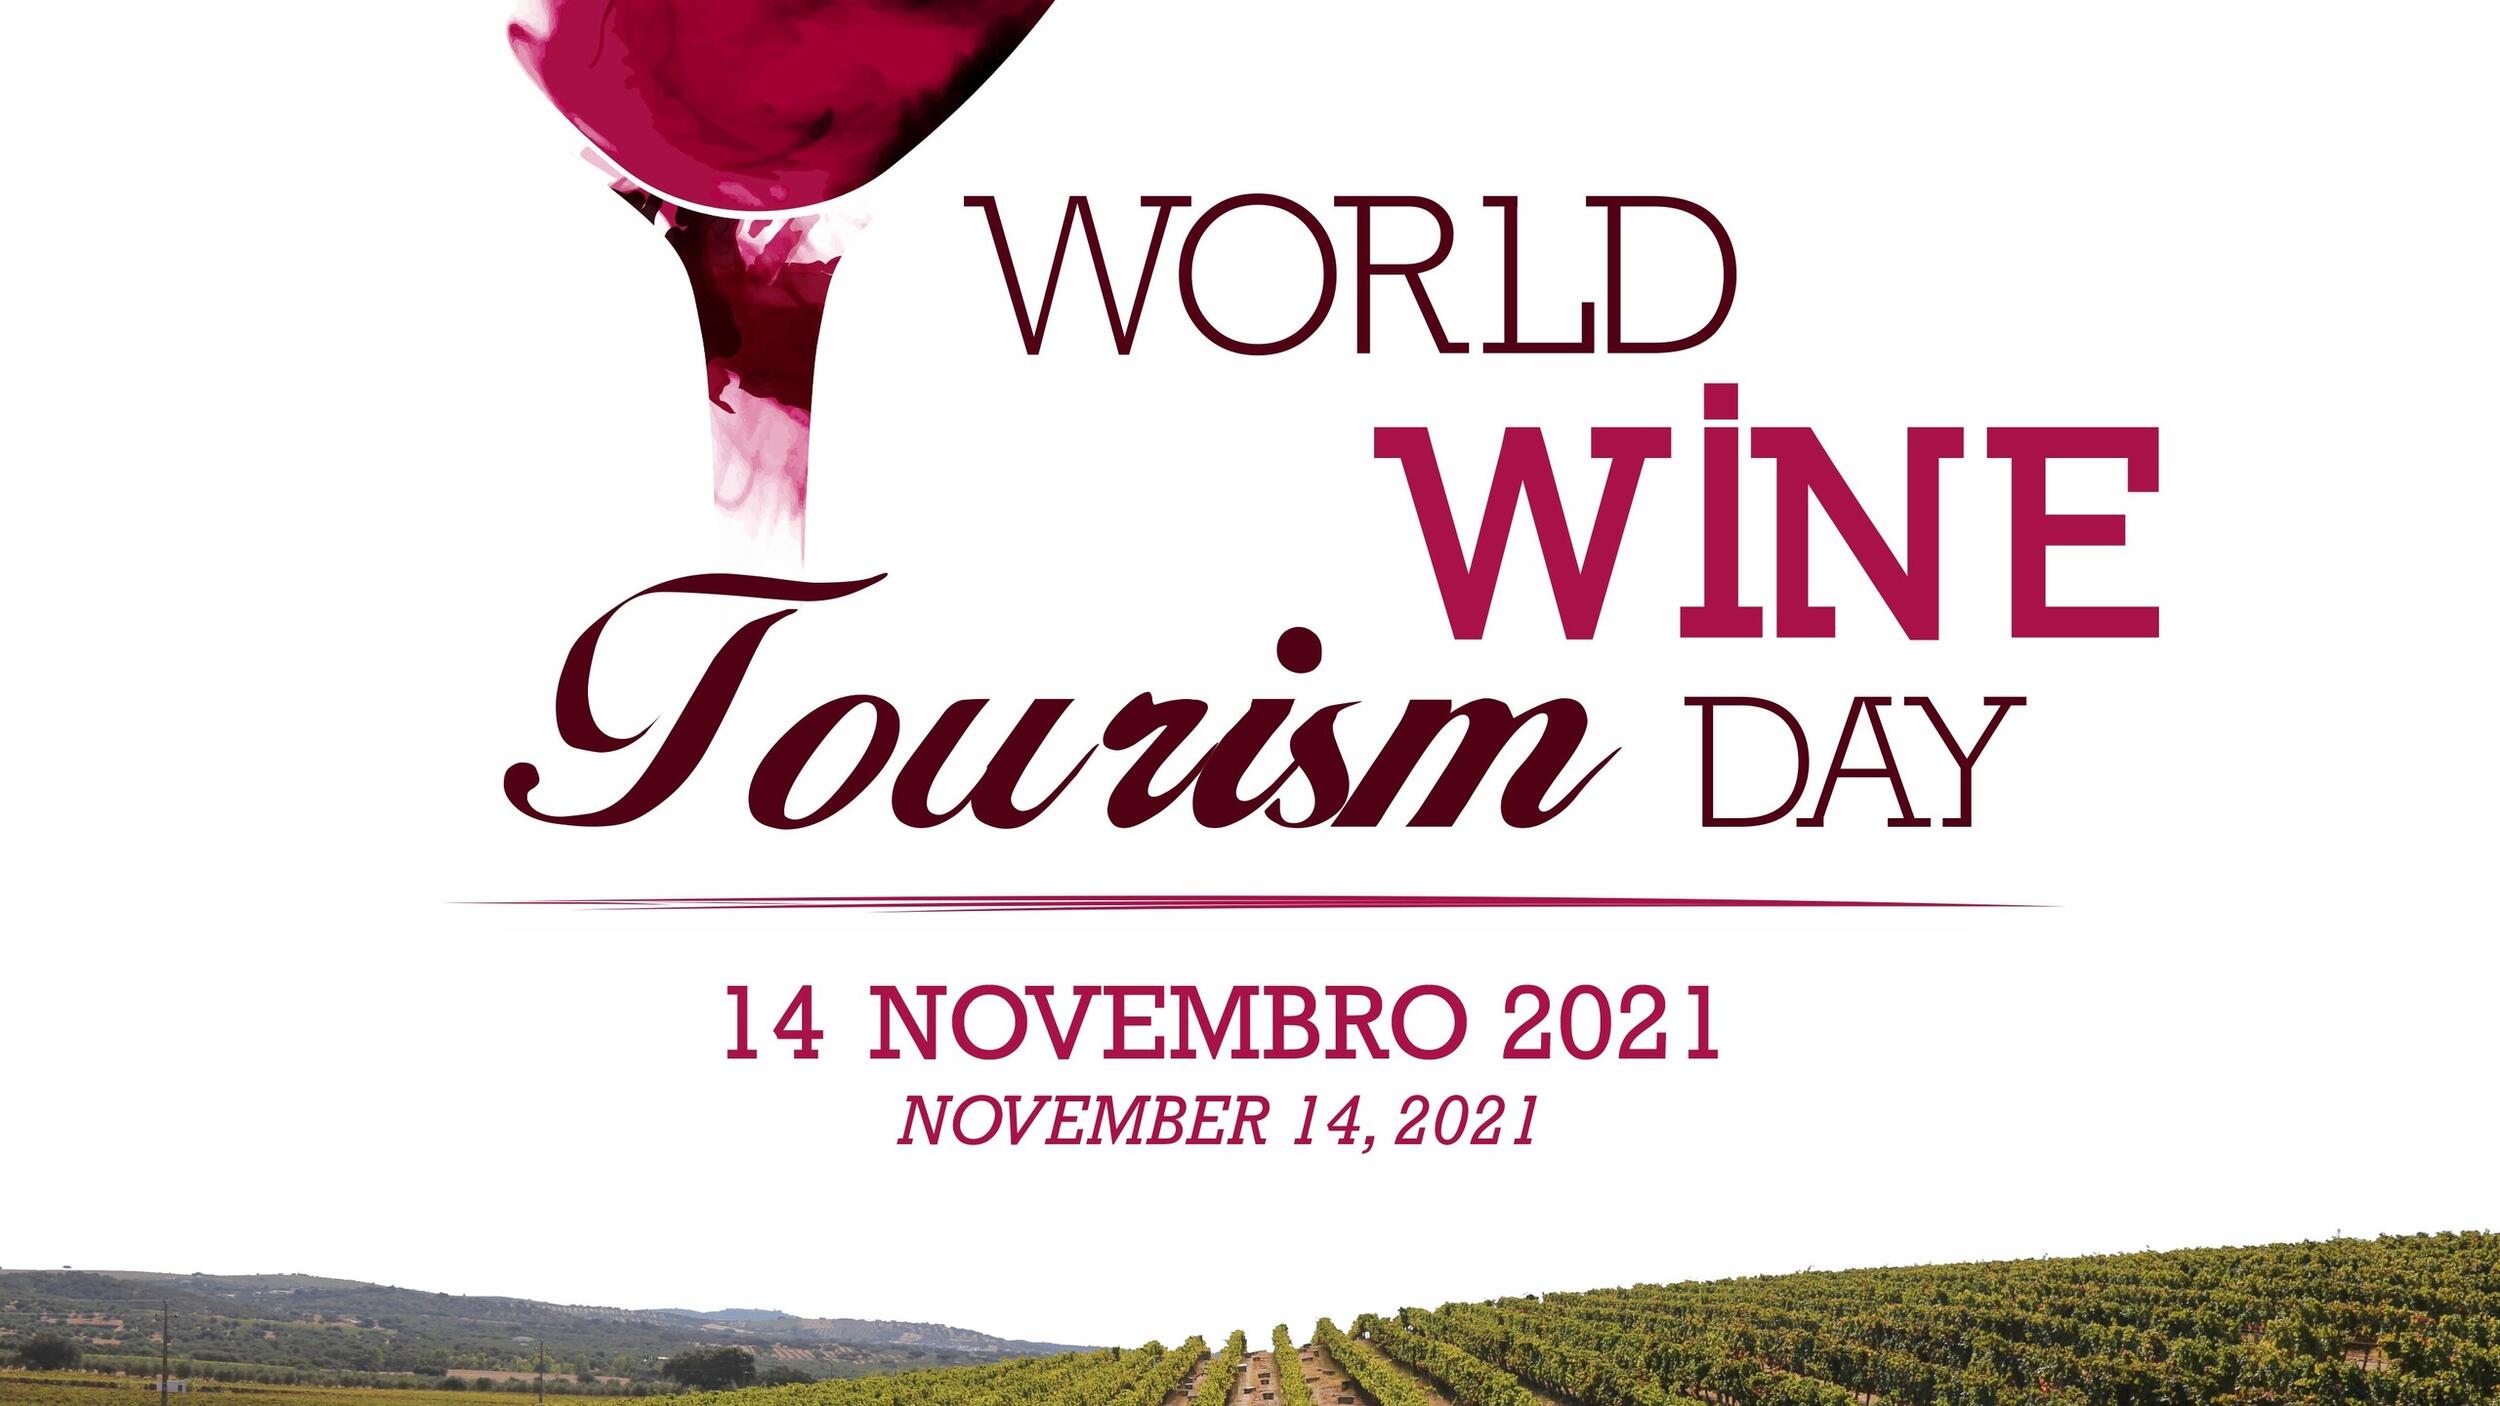 Provas de vinhos e produtos regionais, visitas às adegas e percursos pedestres. Palmela celebra D...